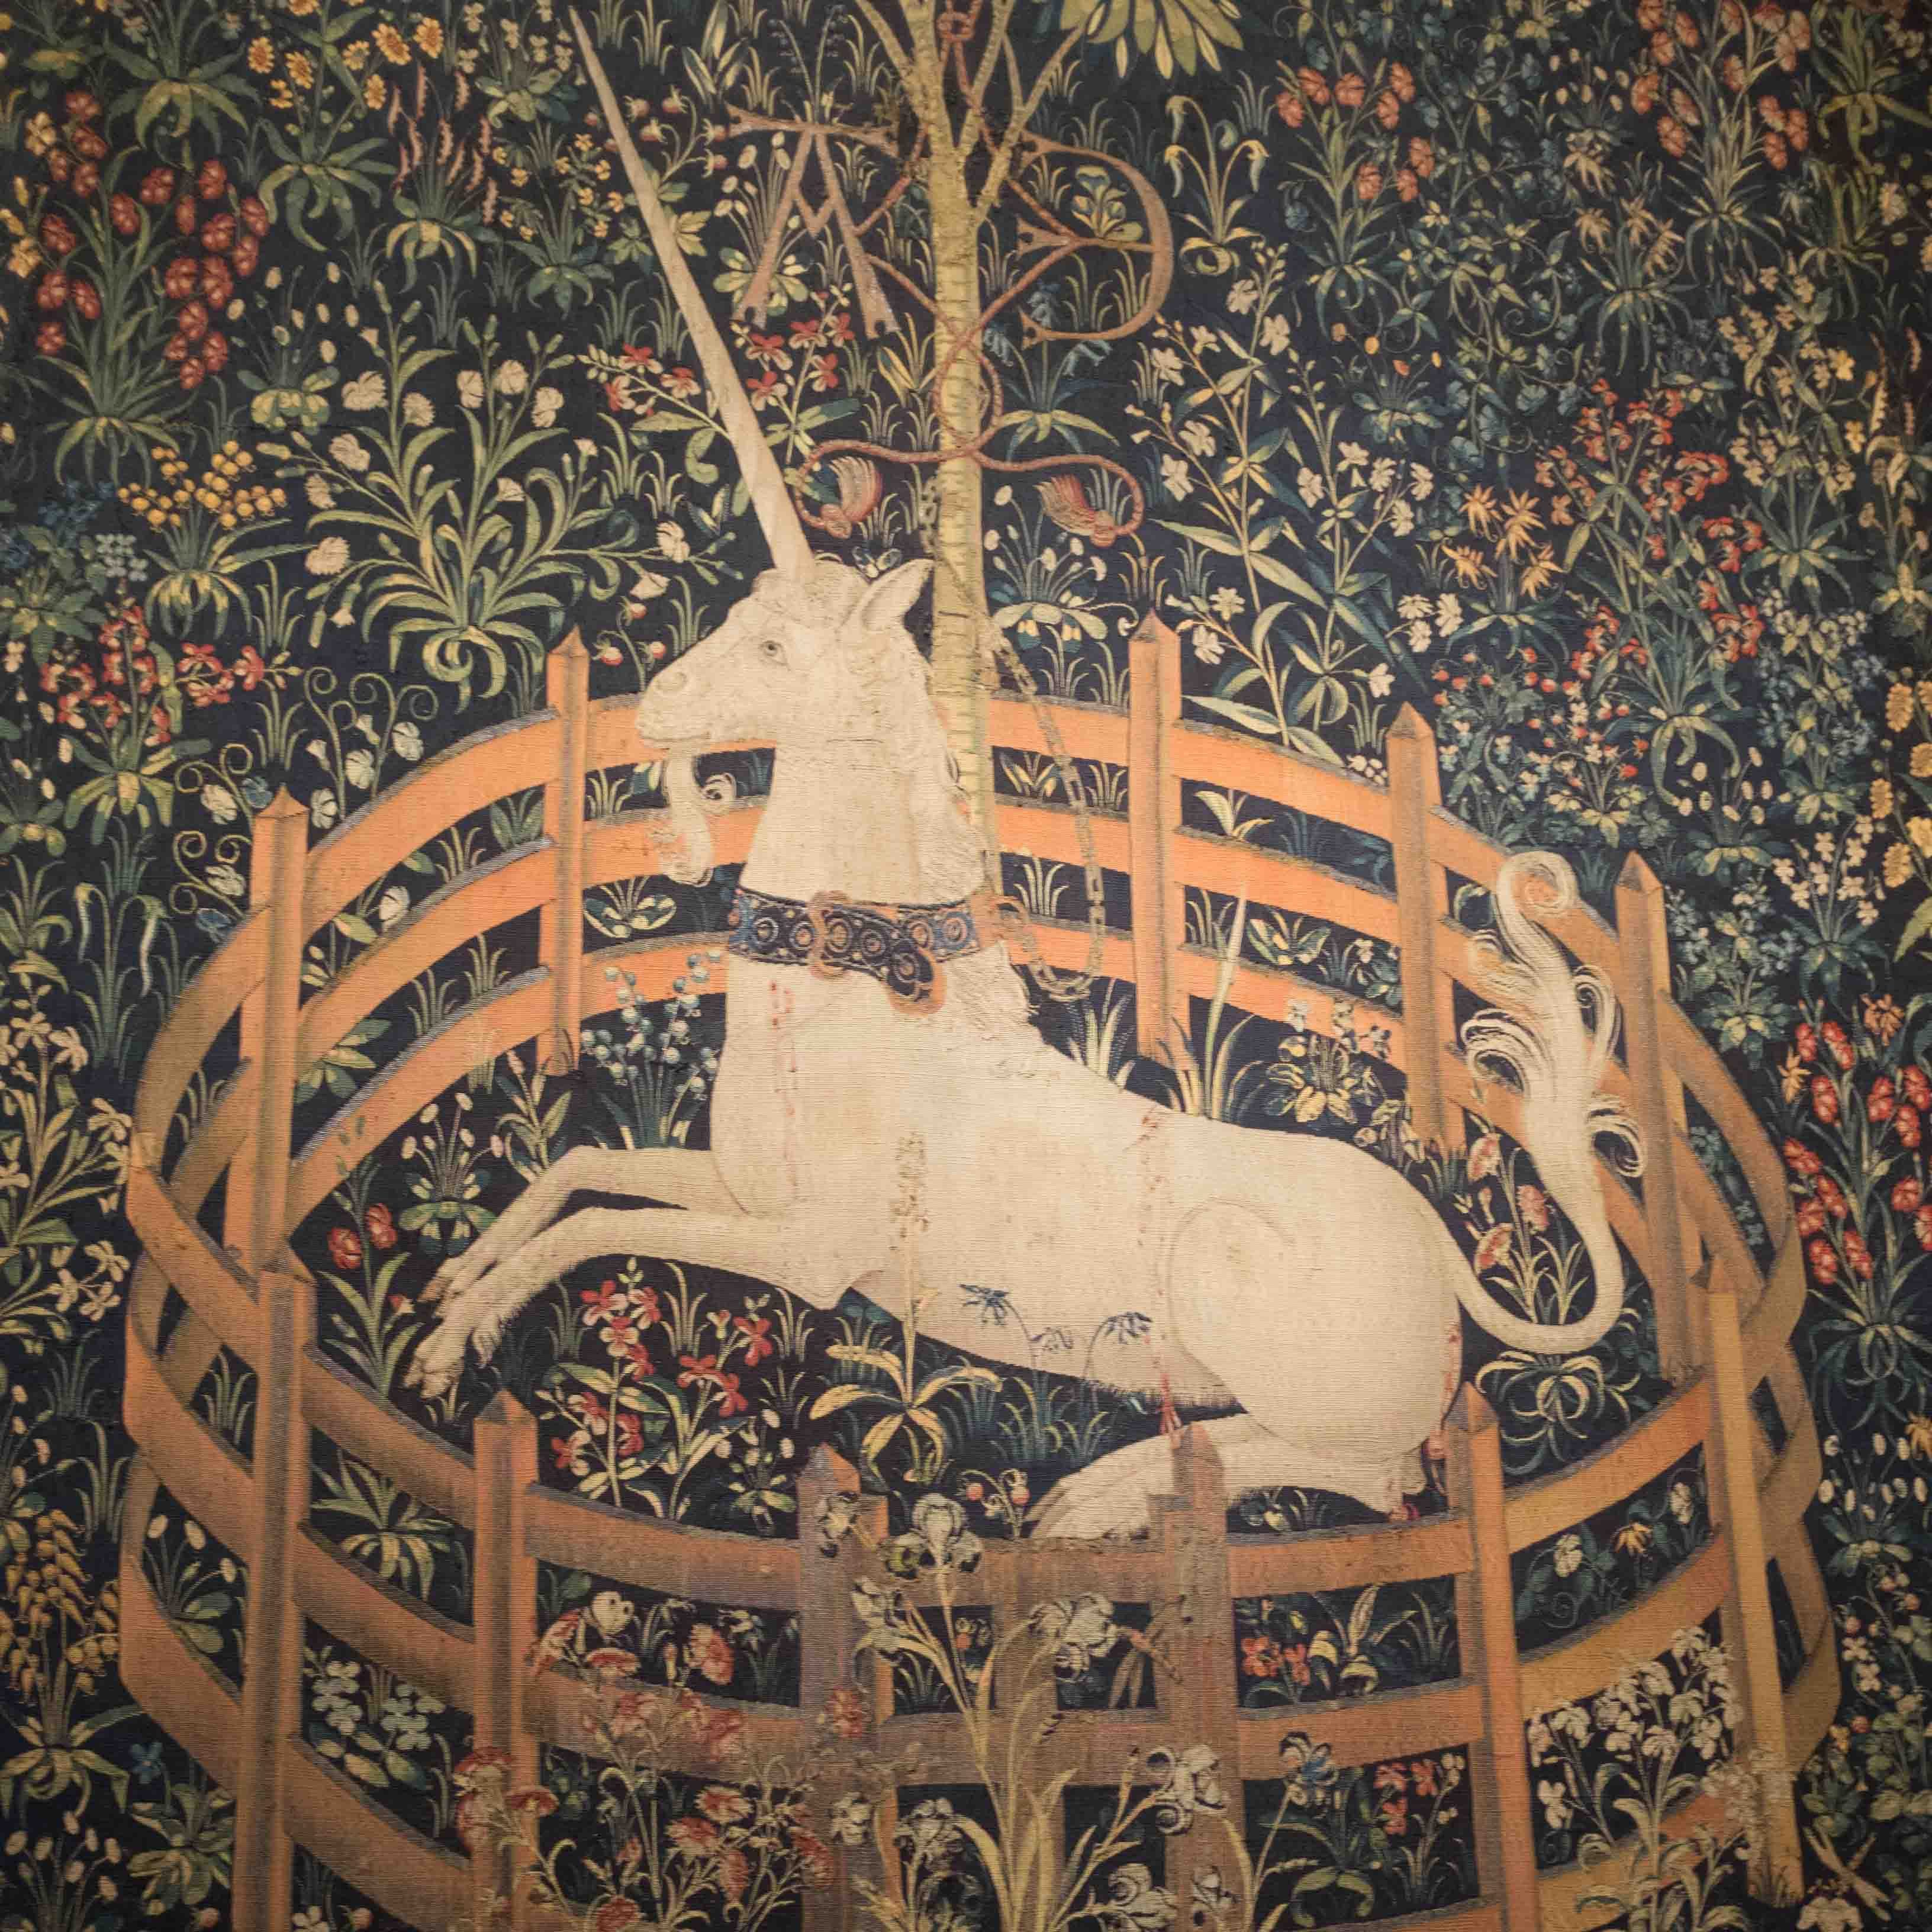 Tapestry 'The Unicorn in Captivity' ('Unicorn dalam Penangkaran') dari koleksi The Cloisters. Foto oleh Karina Maharani/Rappler 